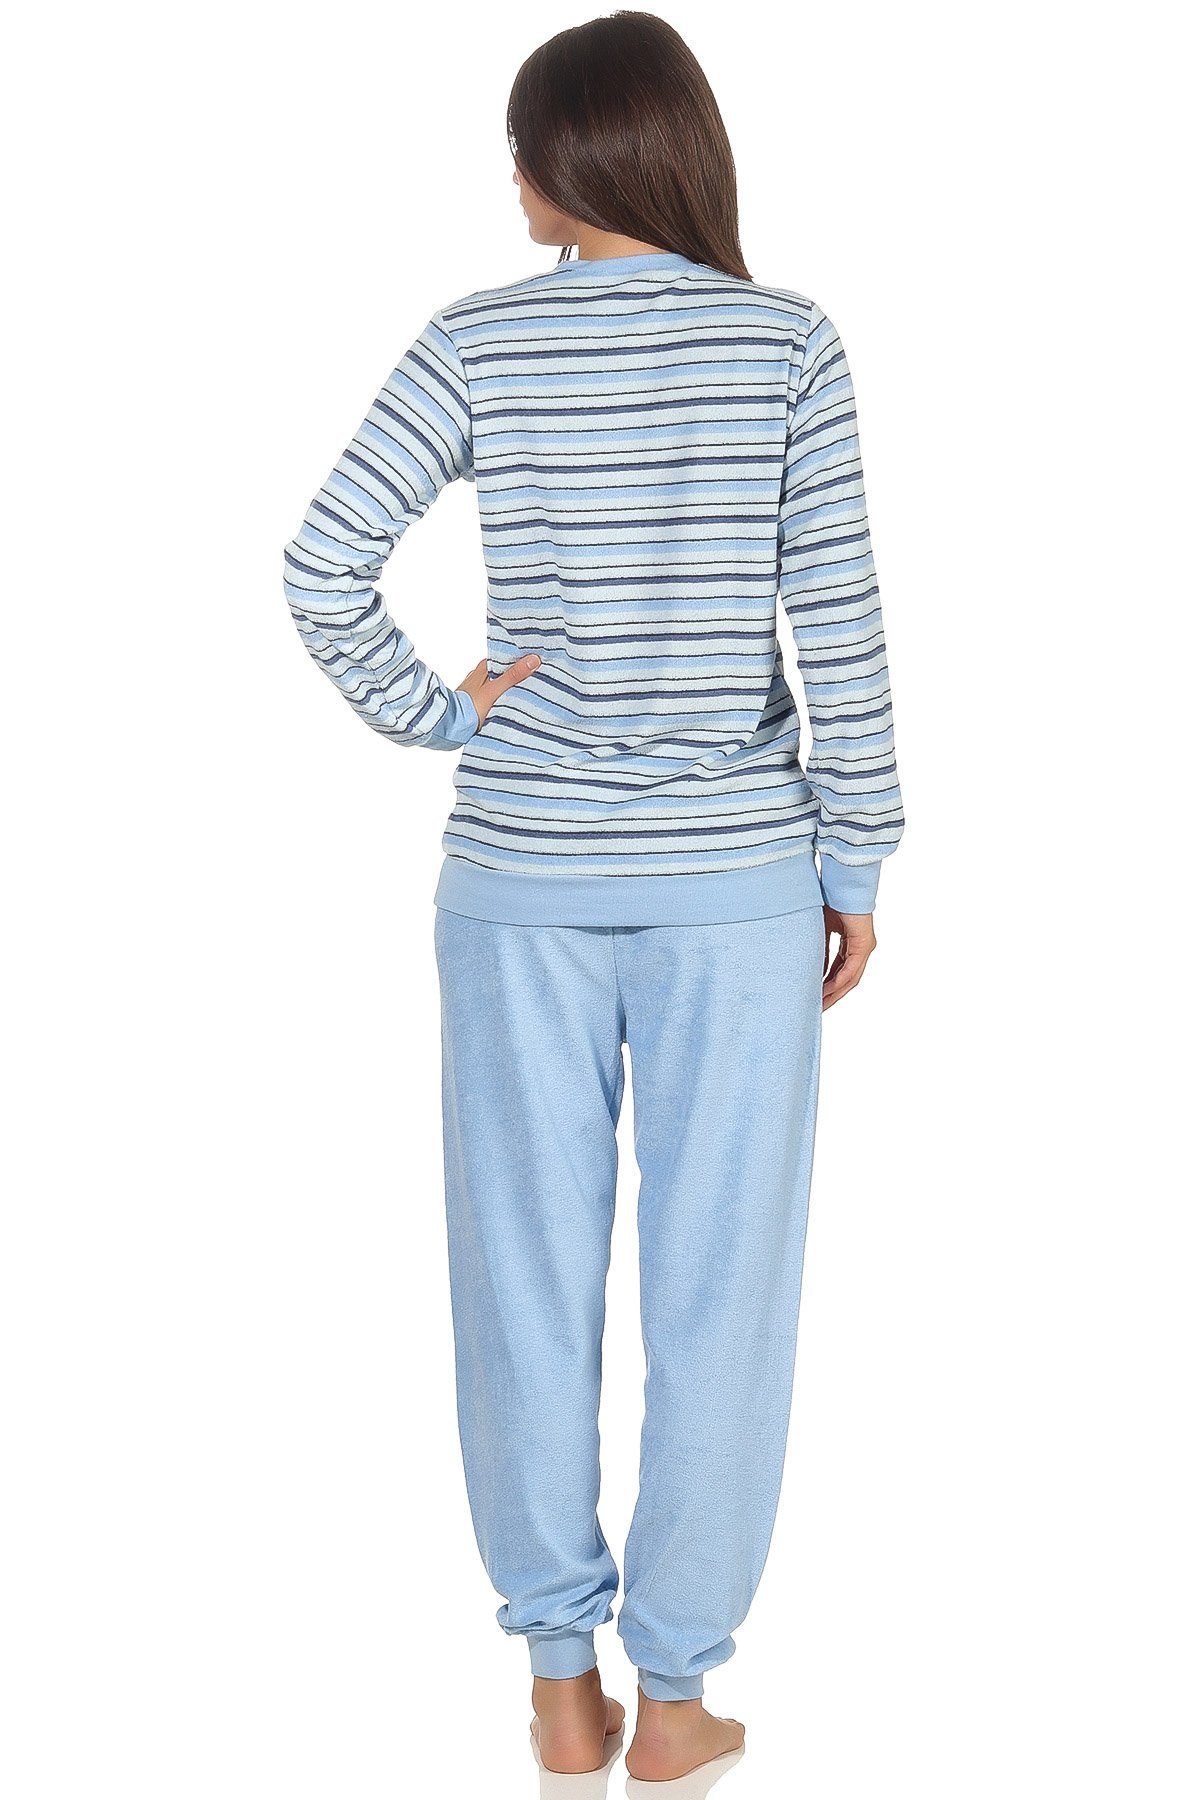 mit 13 - Bündchen Damen Streifenoptik 291 by hellblau RELAX Frottee in Schlafanzug Normann 572 Pyjama